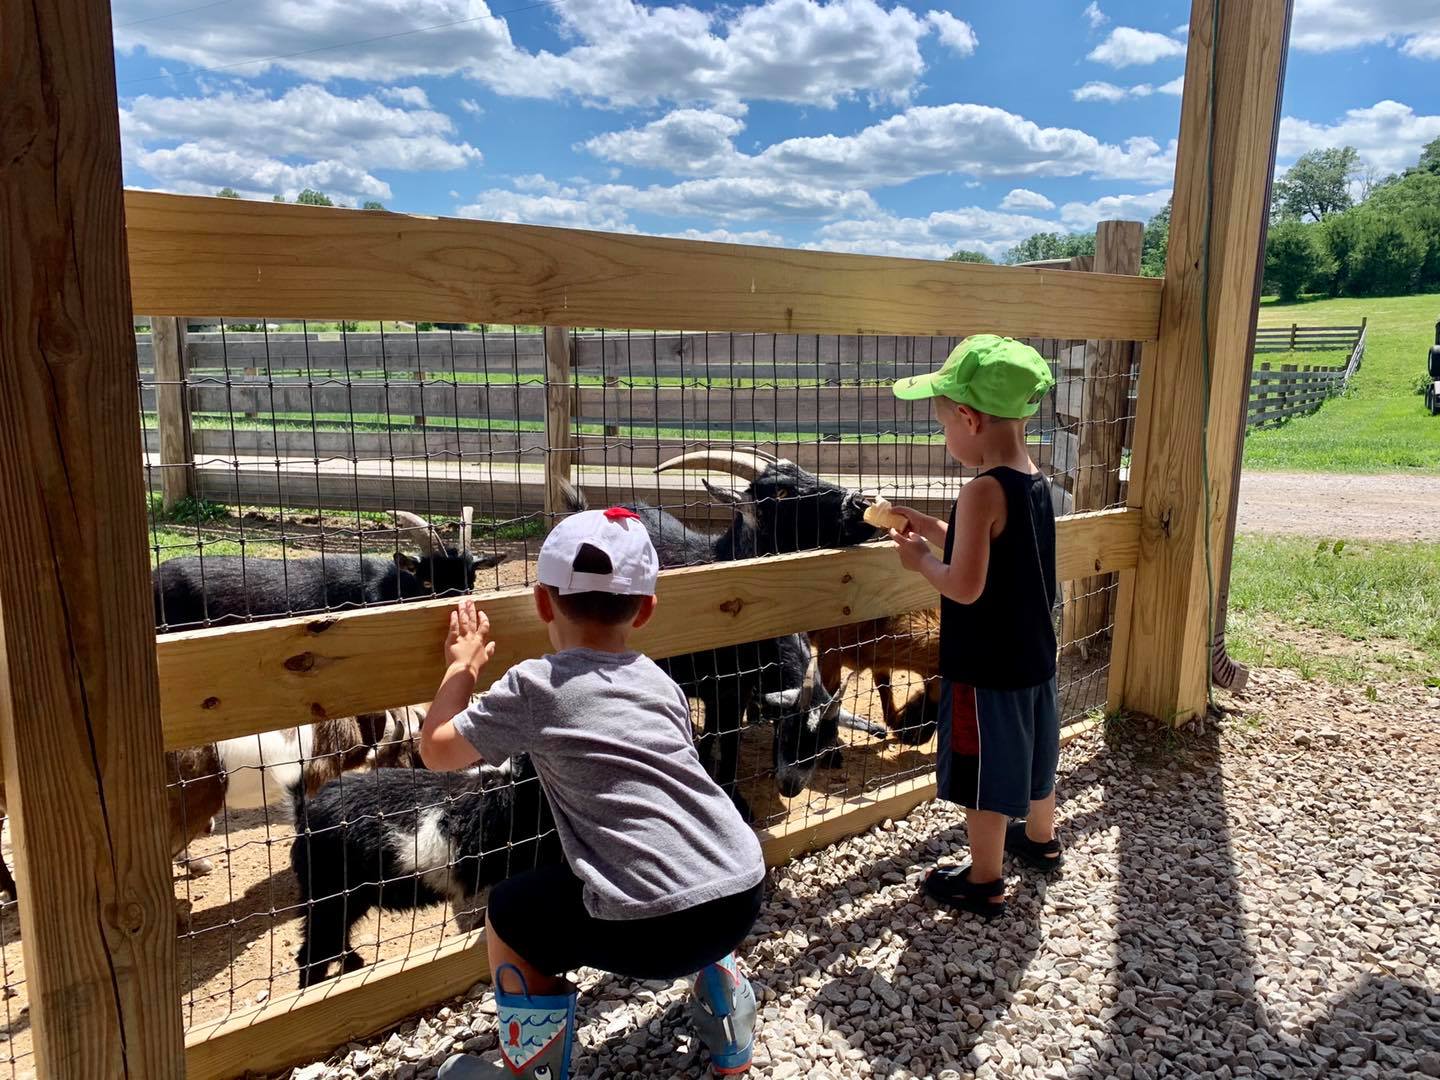 2 boys feeding animals at fence